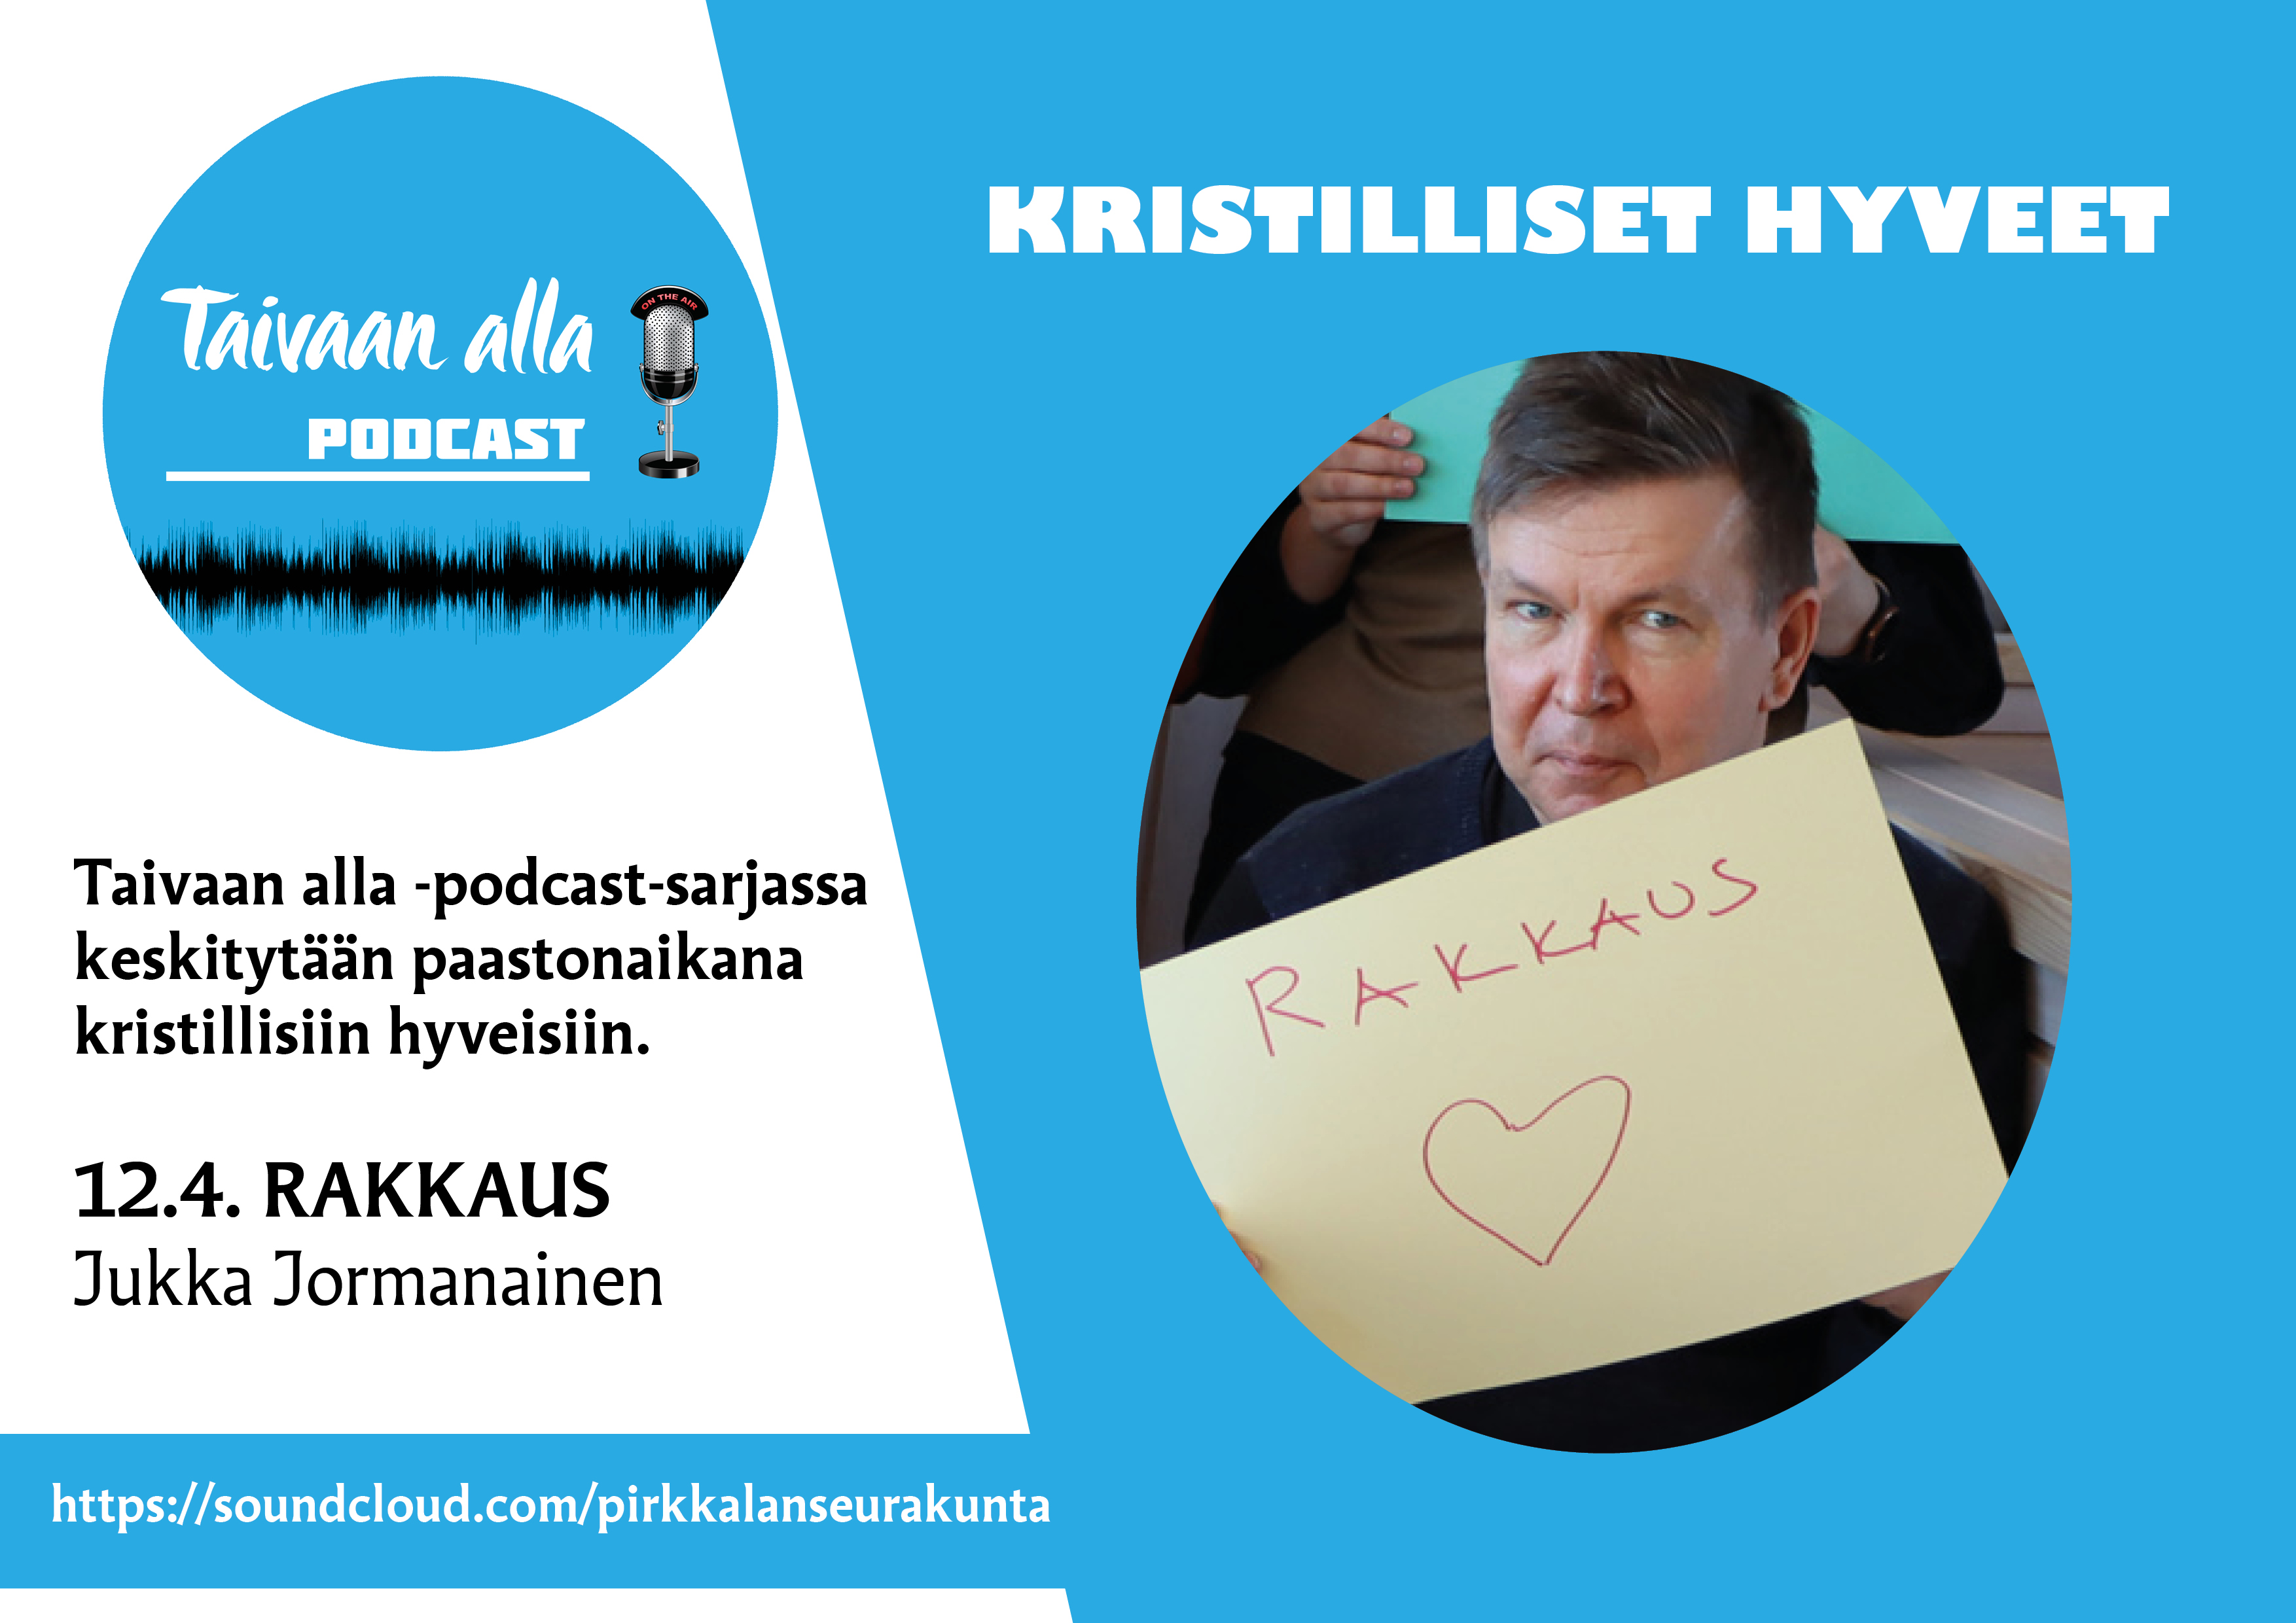 Pastori Jukka Jormanainen podcastin mainosjulisteessa. Jormanaisen kädessä on paperi, jossa lukee 